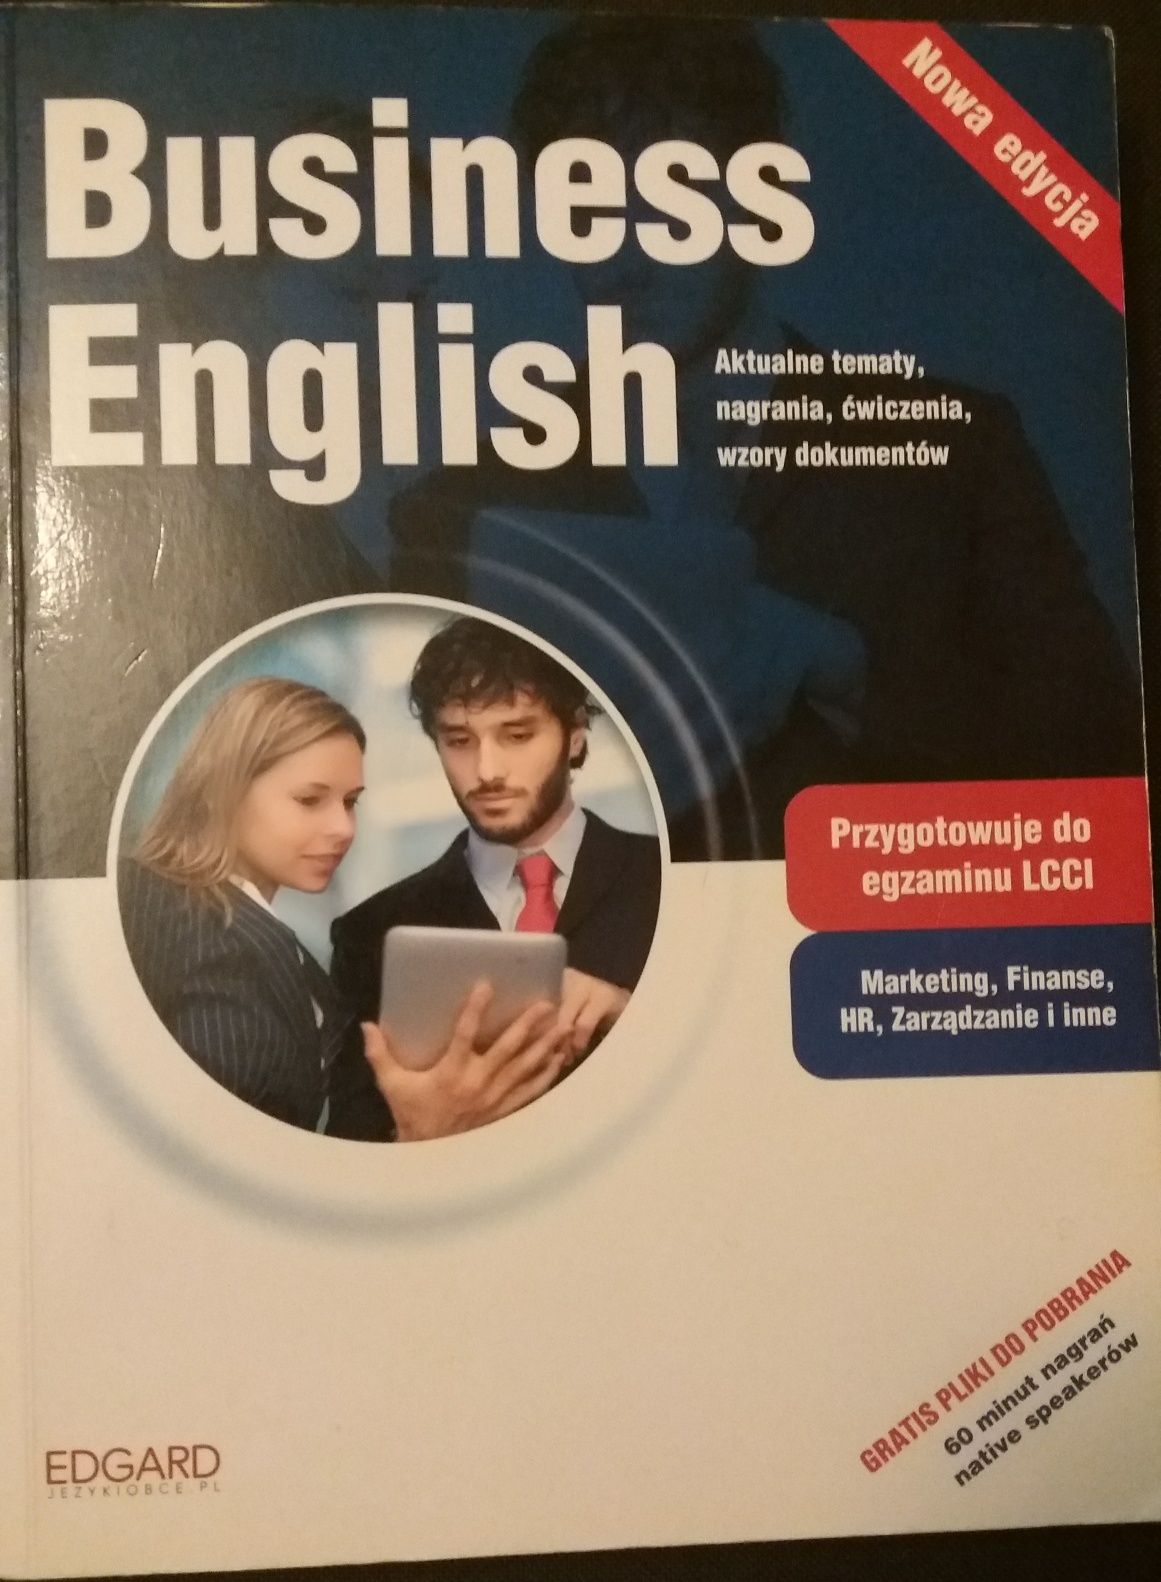 Business english nowa edycja wyd. Edgar